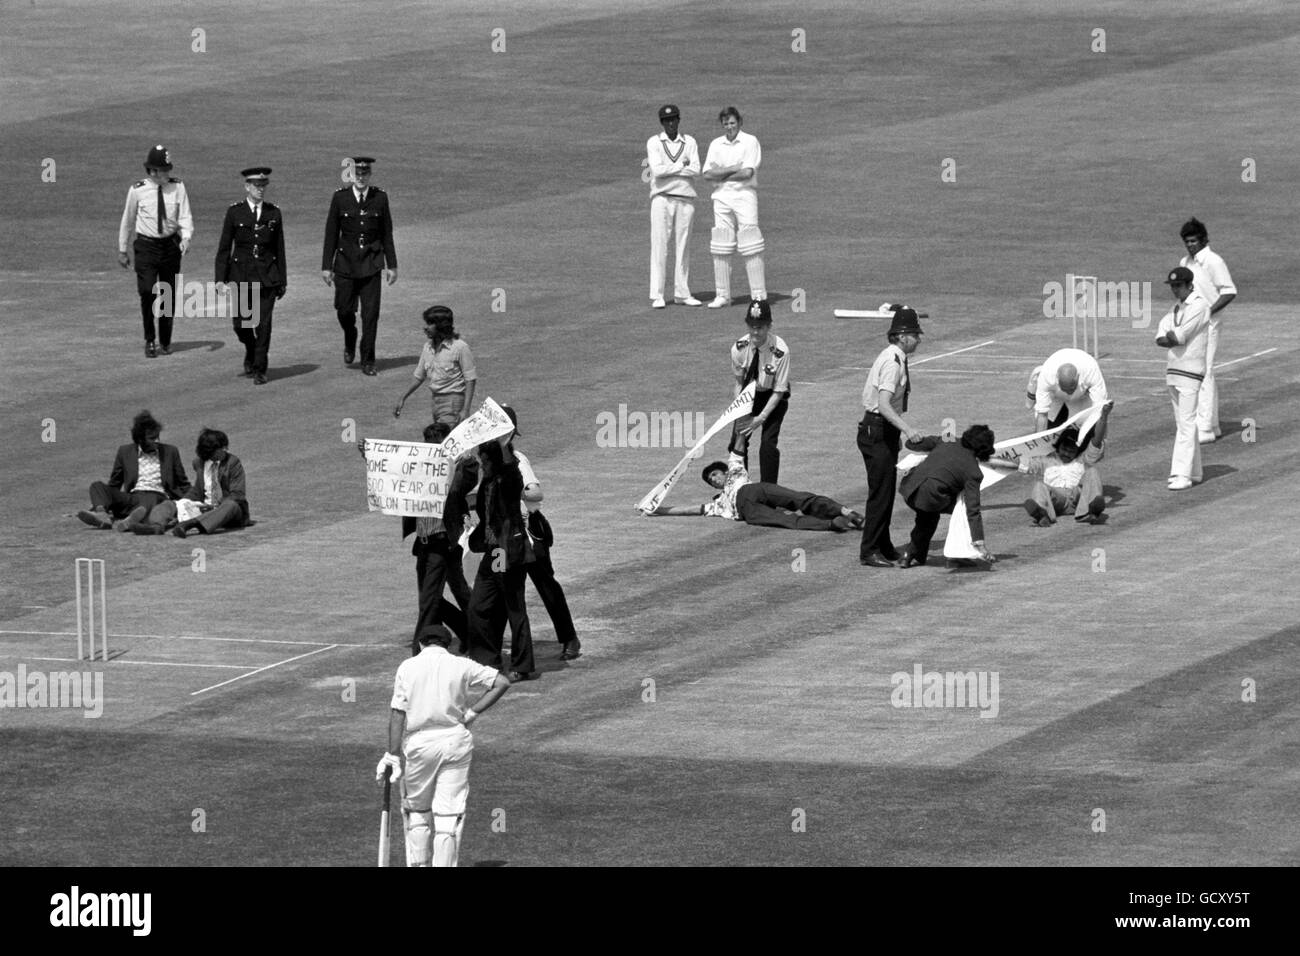 Polizei in Aktion am Oval, als etwa 20 junge Demonstranten während des WM-Spiels Sri Lankas gegen Australien auf den Platz stürmten. Banner protestierten, dass Sri Lankas Teamwahl rassisch voreingenommen sei. Stockfoto